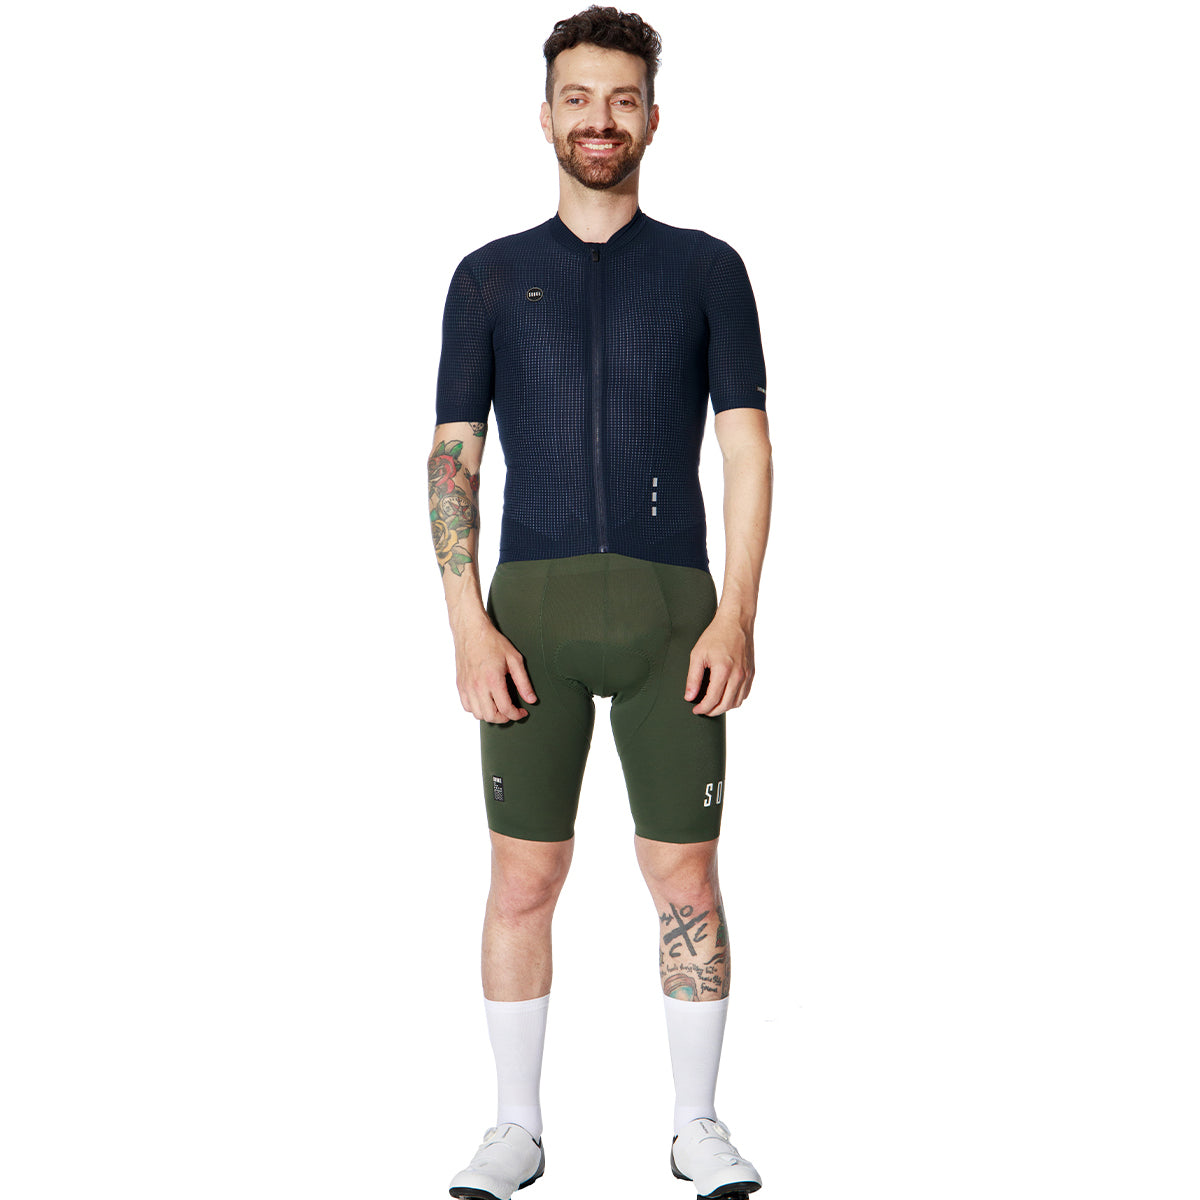 Race Fit Cycling Shorts Men & Women BS1601 - Green (6591910609009)